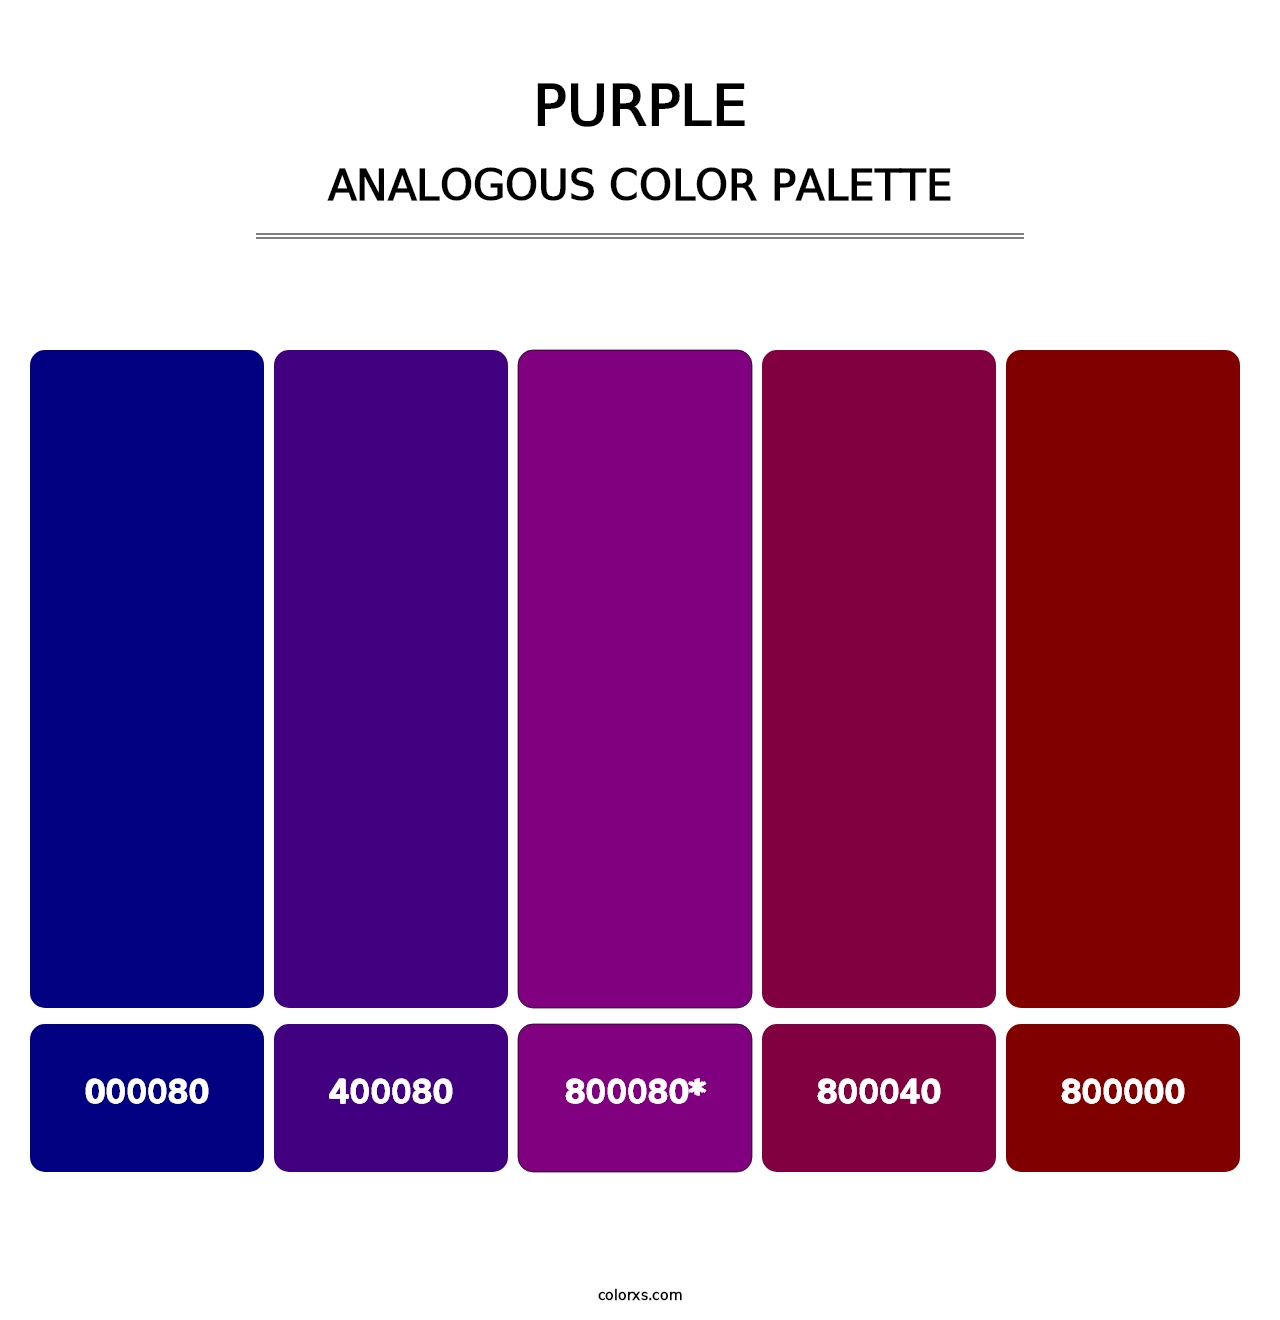 Purple - Analogous Color Palette